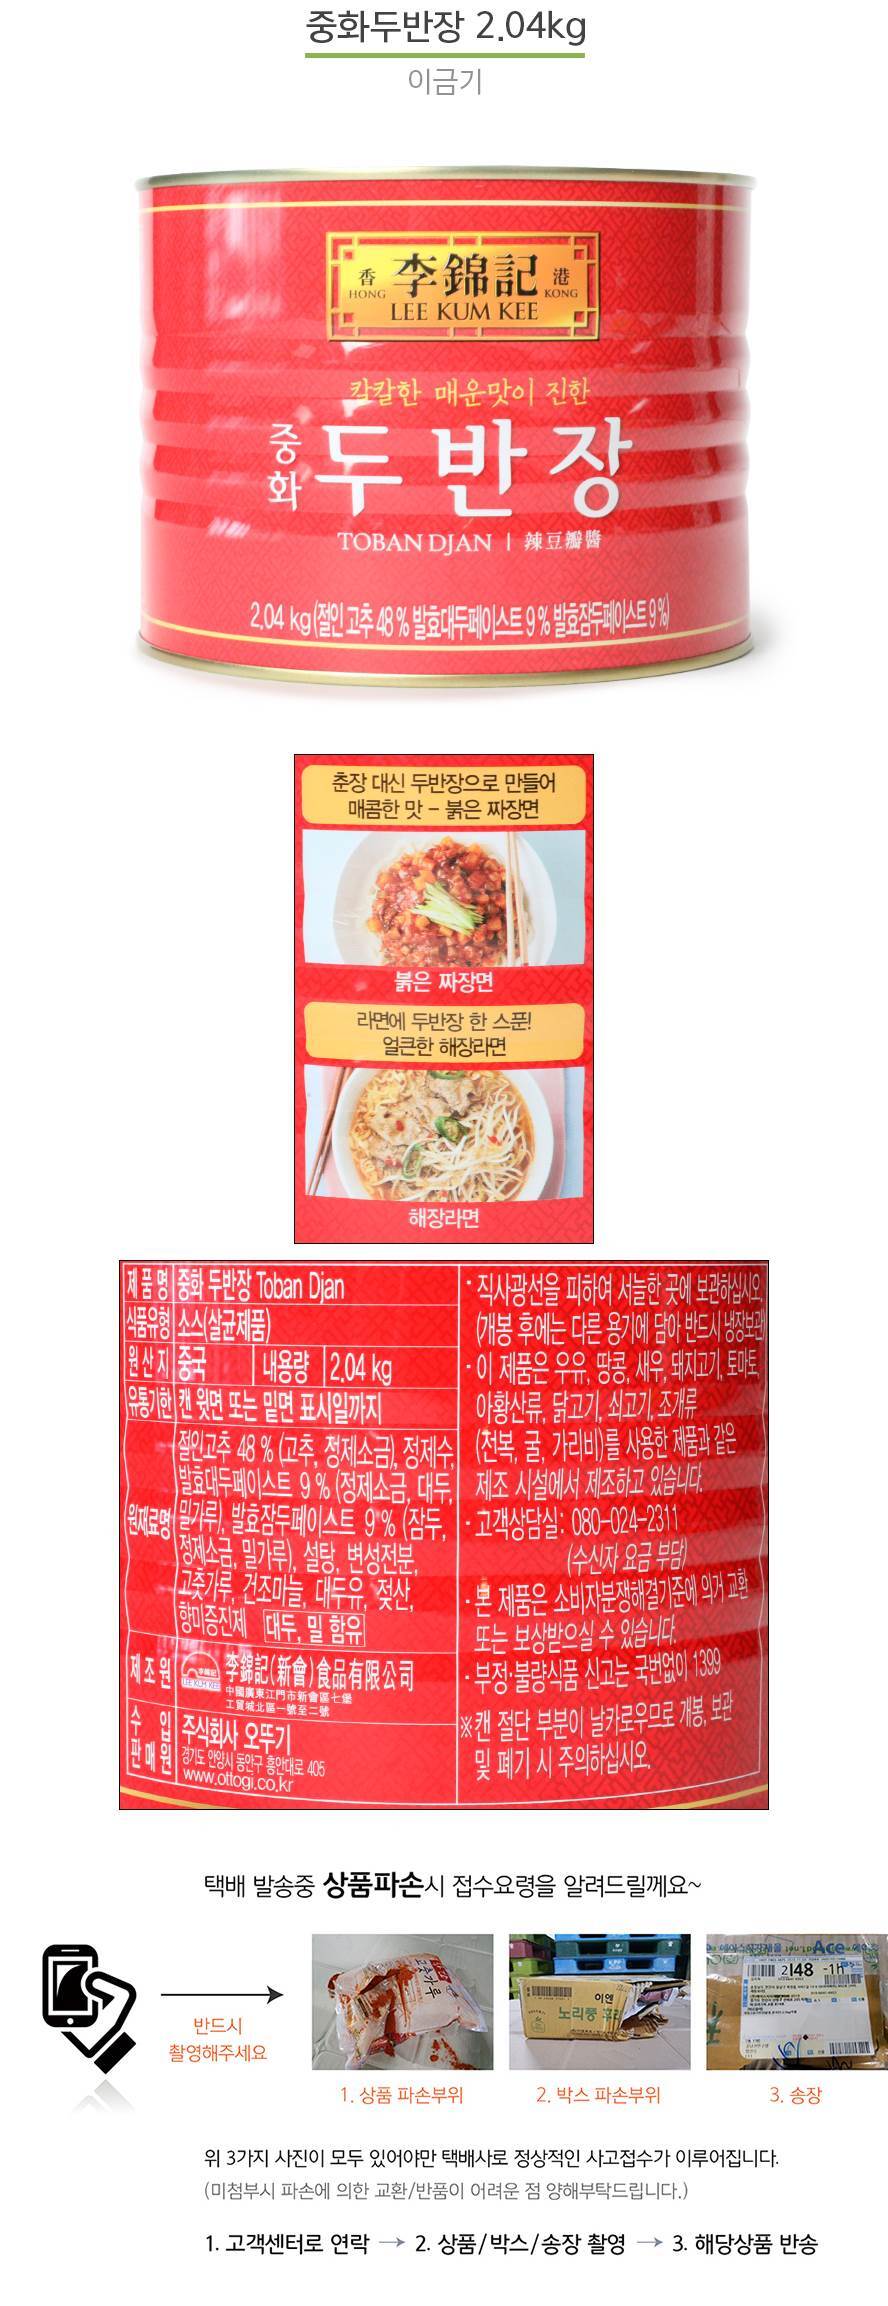 중화두반장 2.04Kg/이금기-마파두부 중국요리 - G마켓 모바일